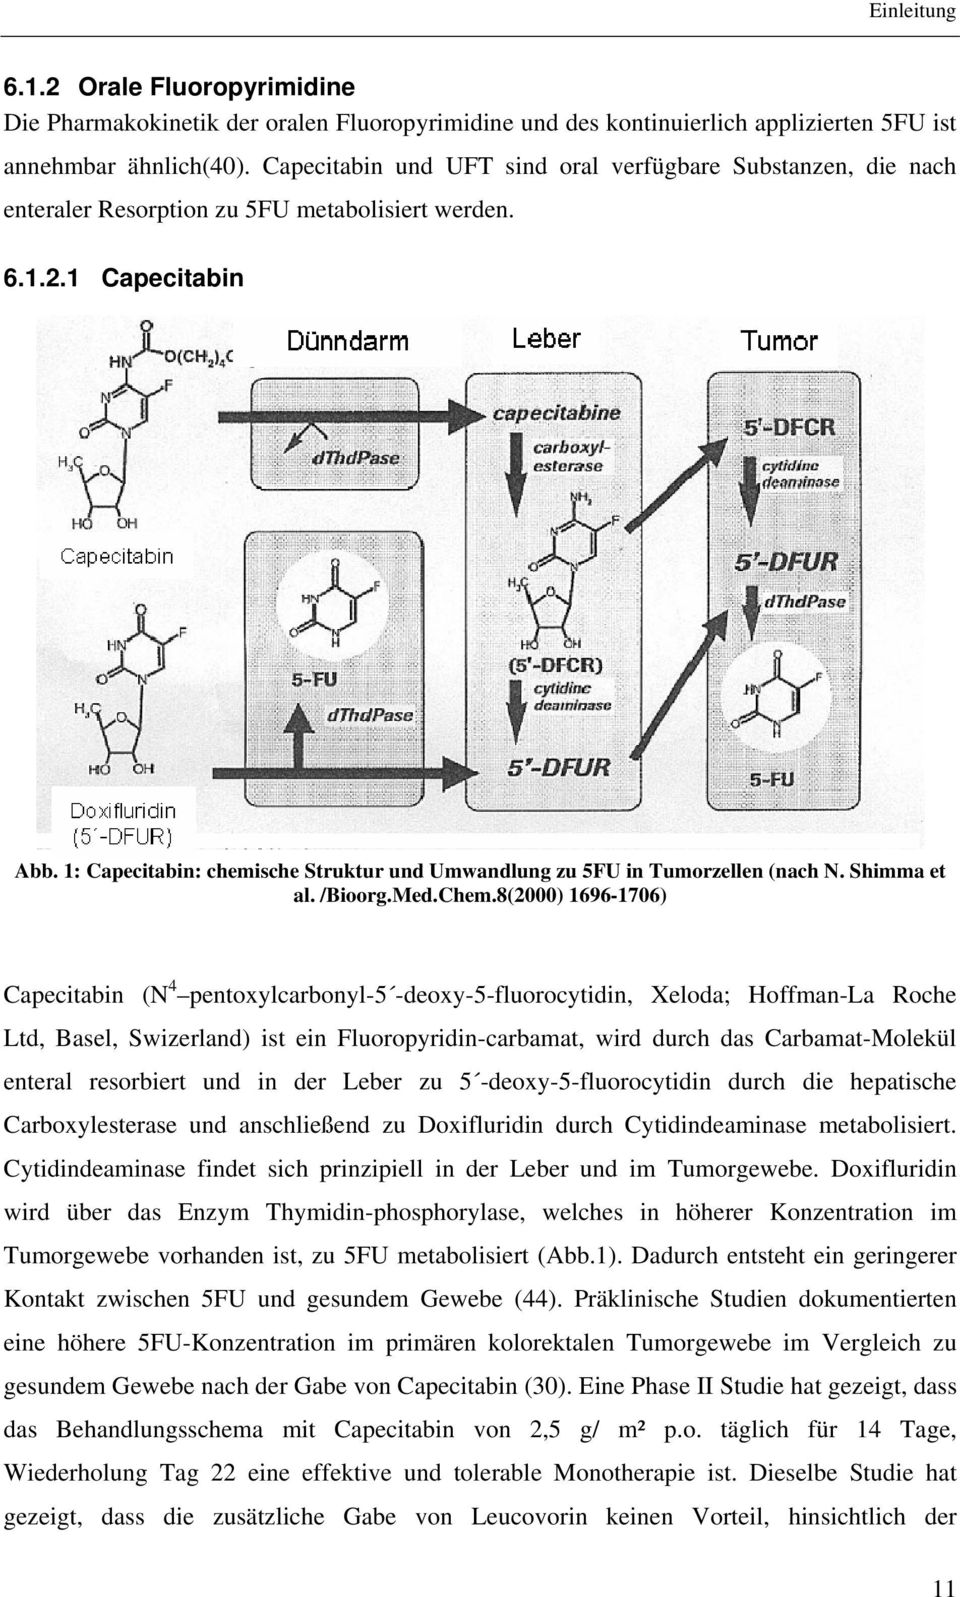 1: Capecitabin: chemische Struktur und Umwandlung zu 5FU in Tumorzellen (nach N. Shimma et al. /Bioorg.Med.Chem.